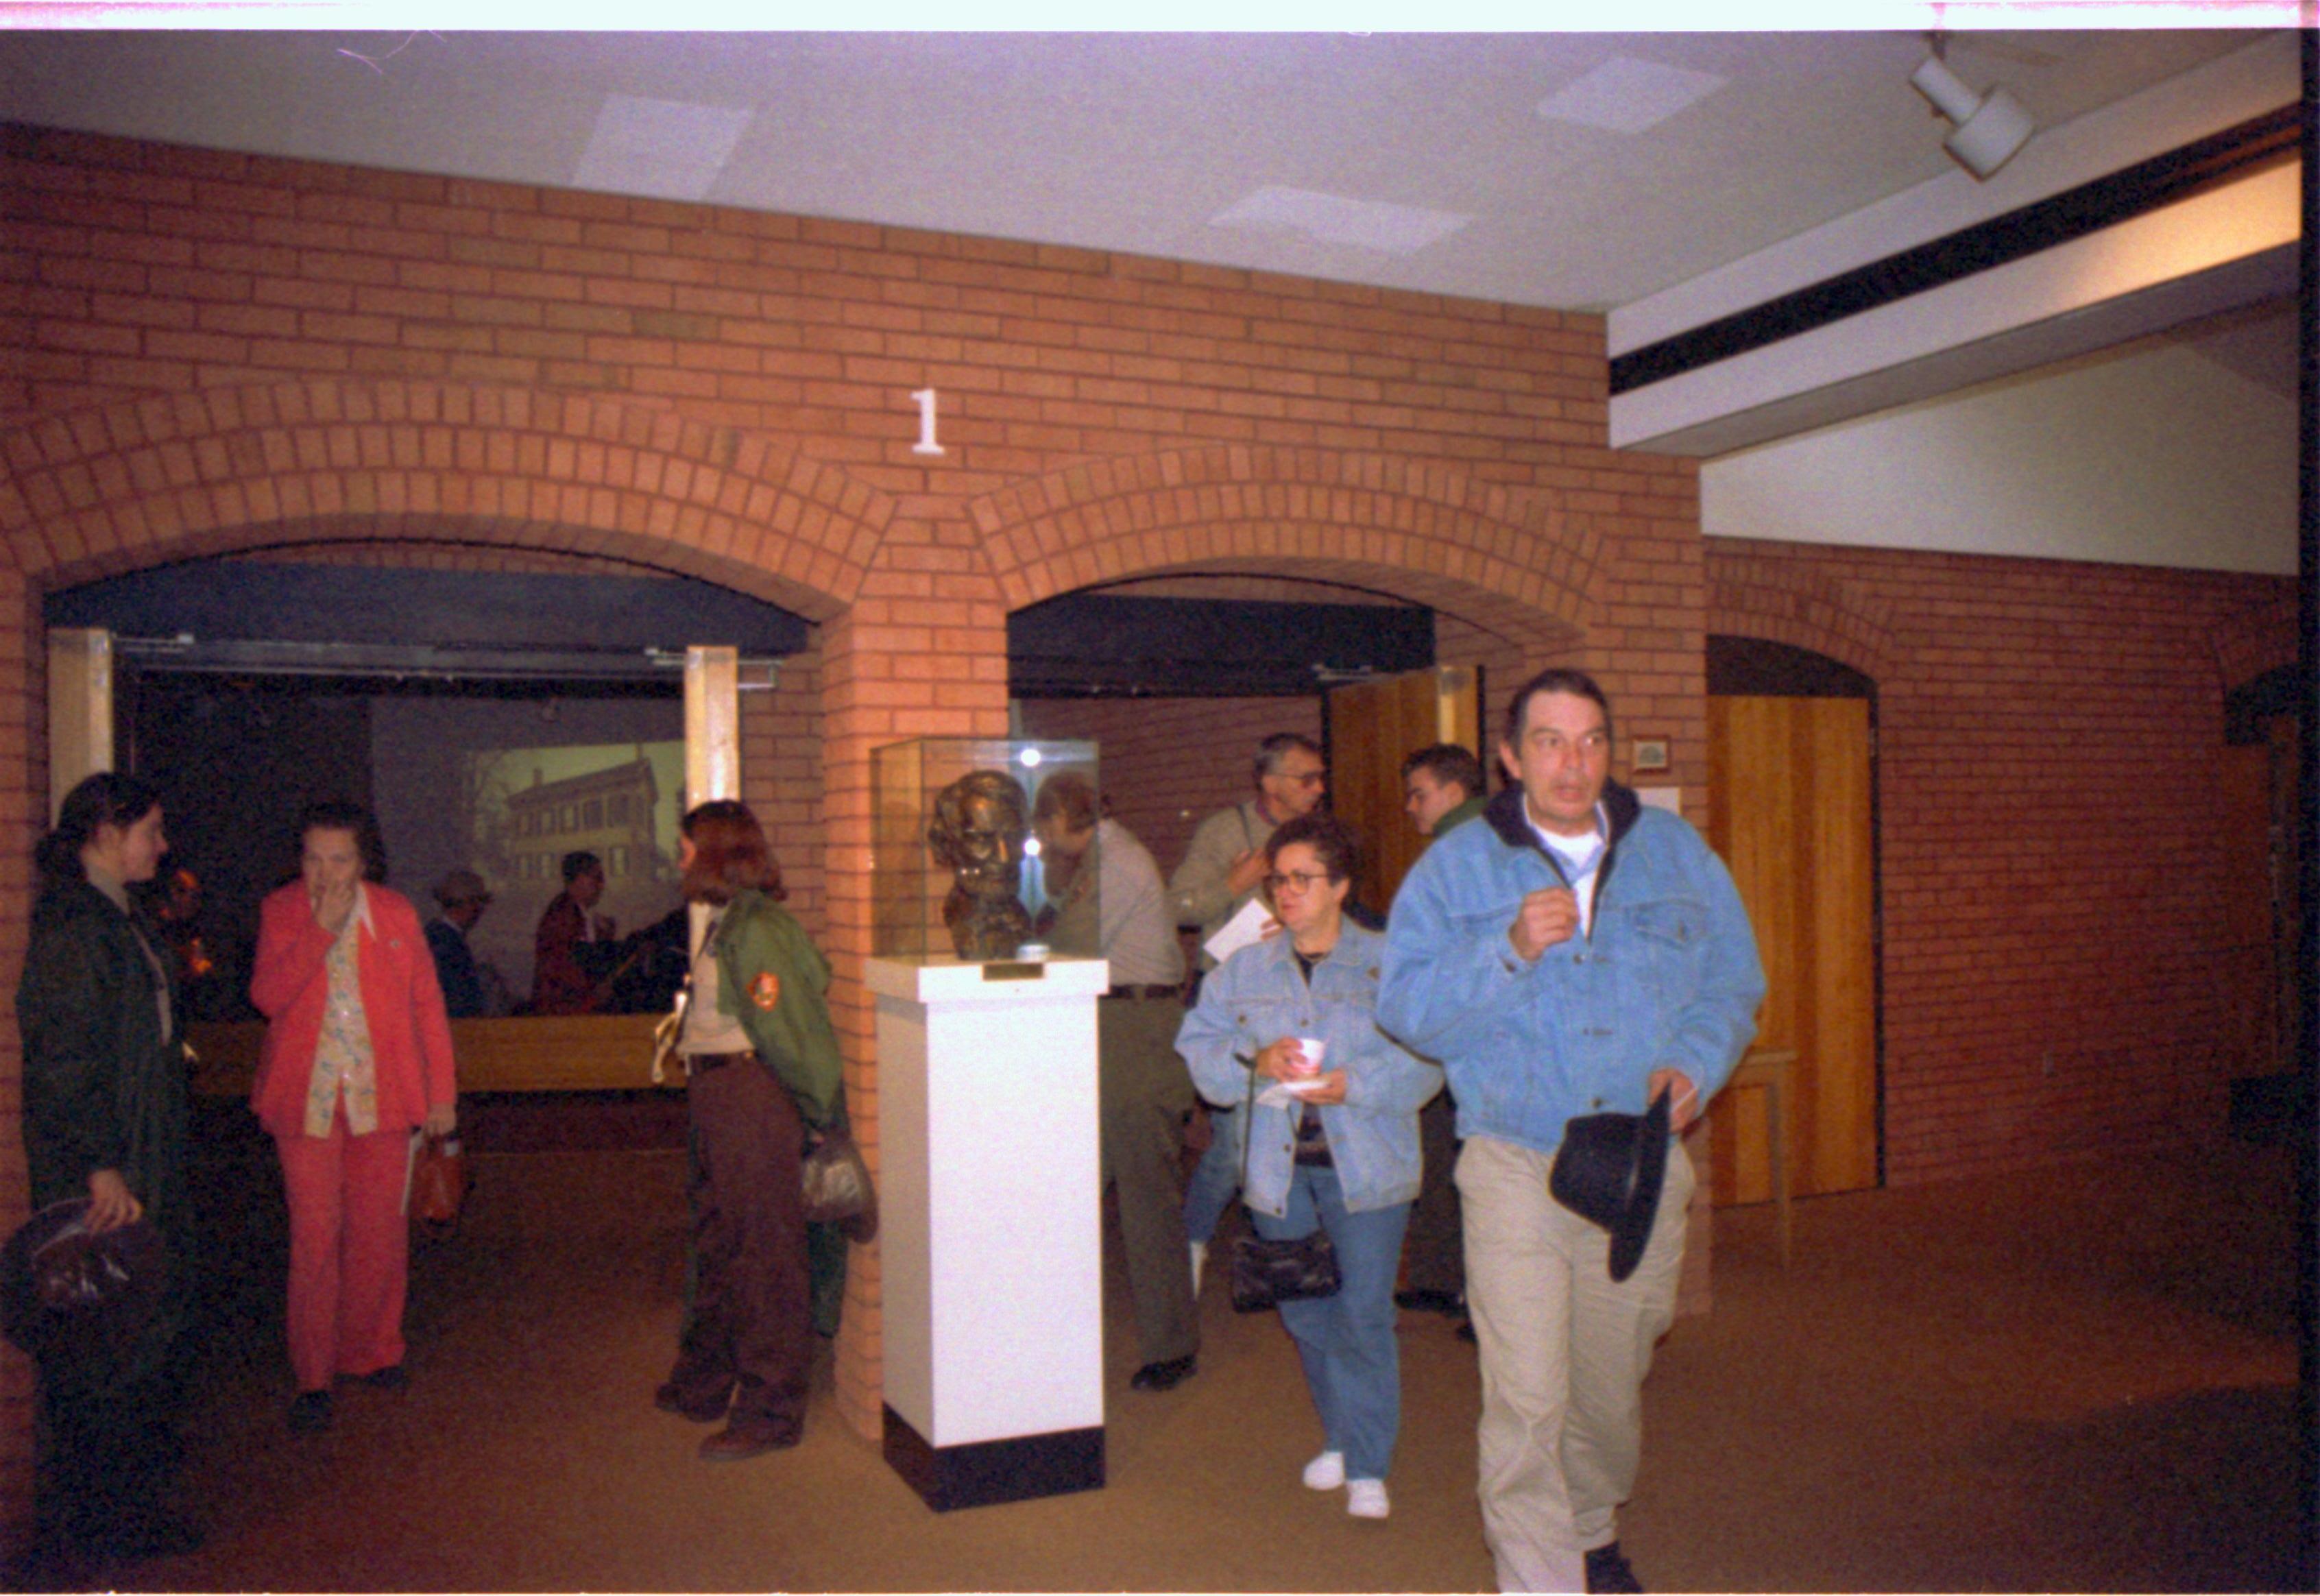 Guests exiting Theater I. 2-1997 Colloq (color); 20 Colloquium, 1997